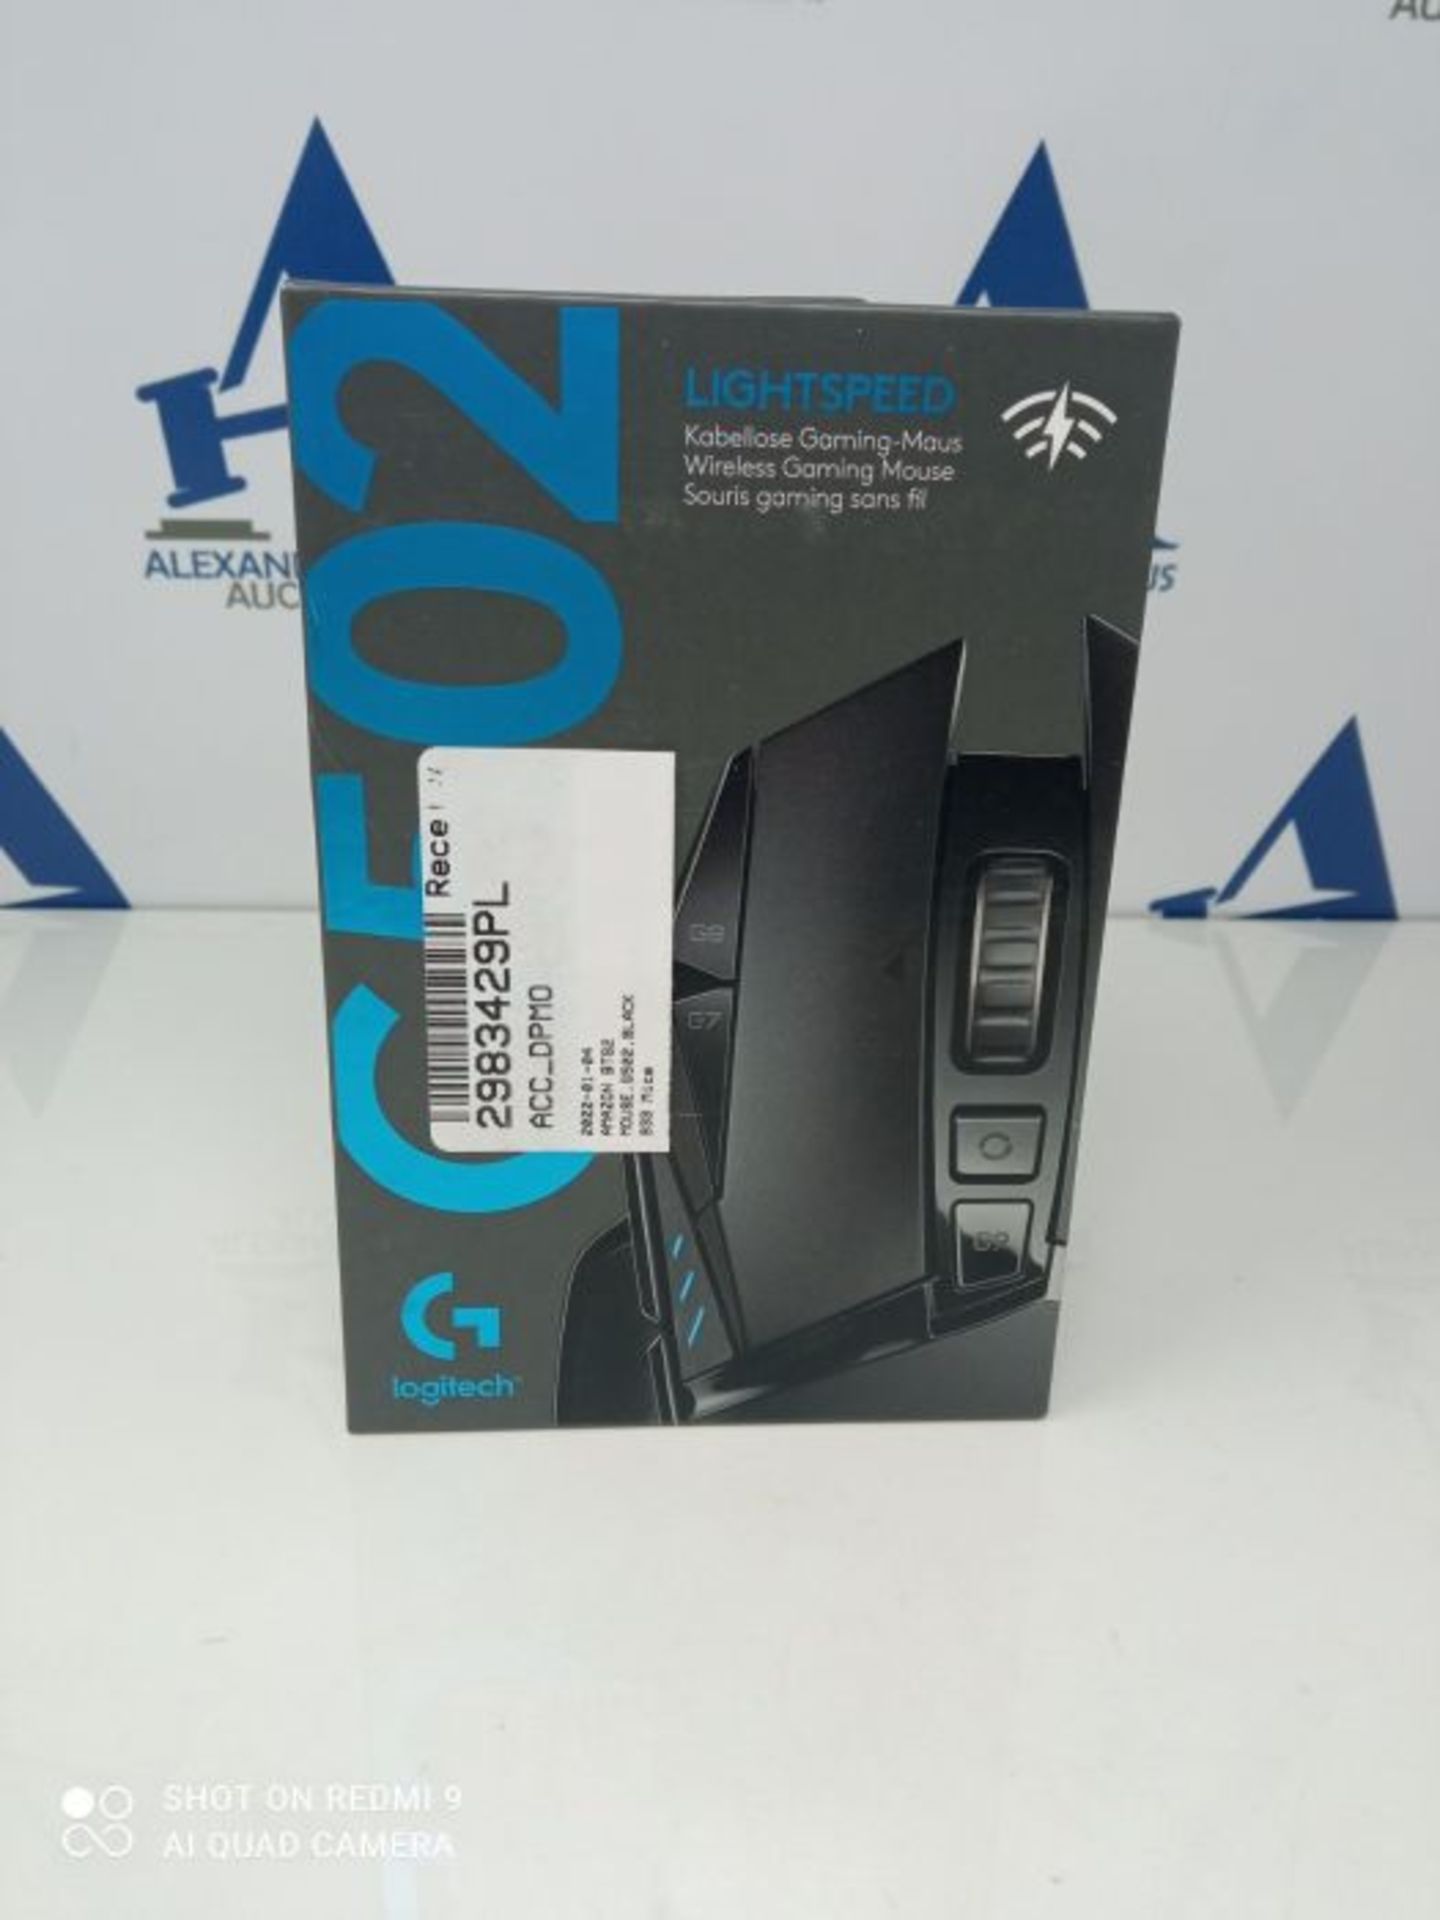 RRP £99.00 Logitech G502 LIGHTSPEED kabellose Gaming-Maus mit HERO 25K DPI Sensor, Wireless Verbi - Image 2 of 3